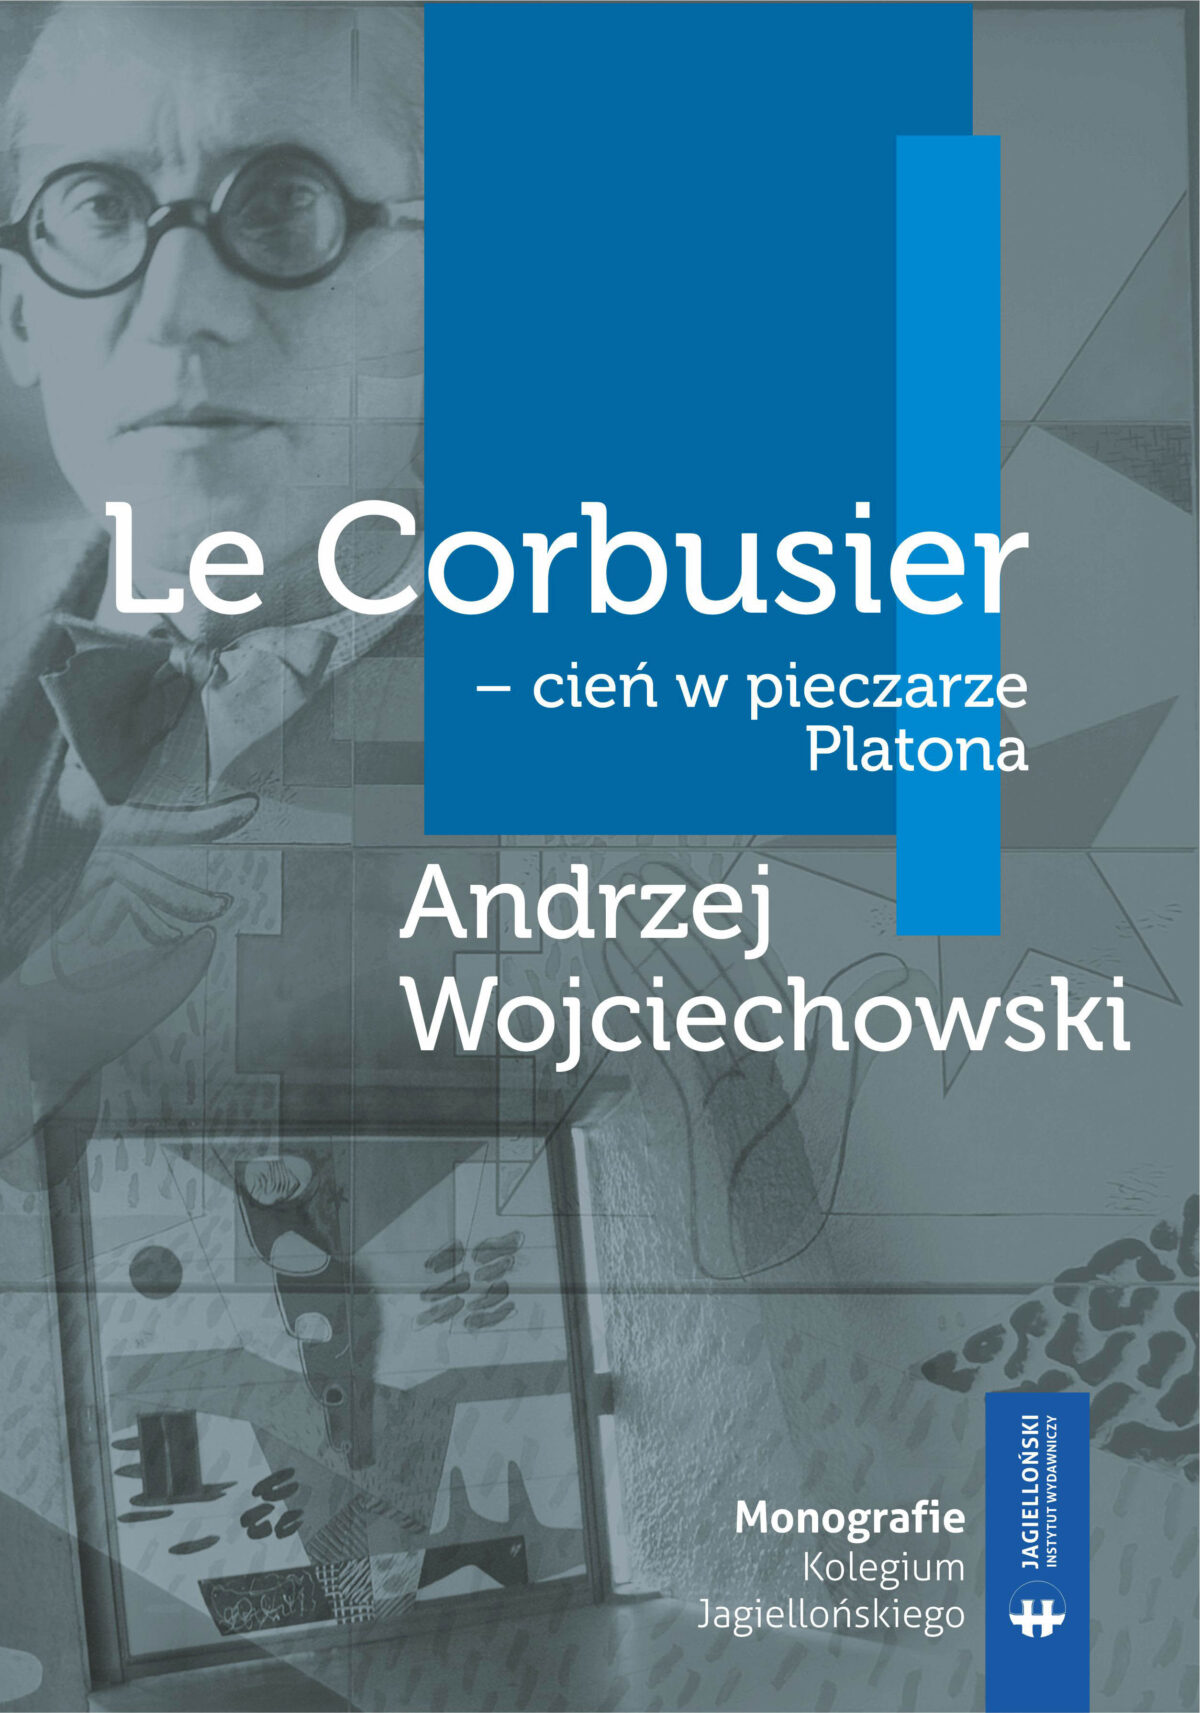 Le Corbusier– cień w pieczarzePlatona